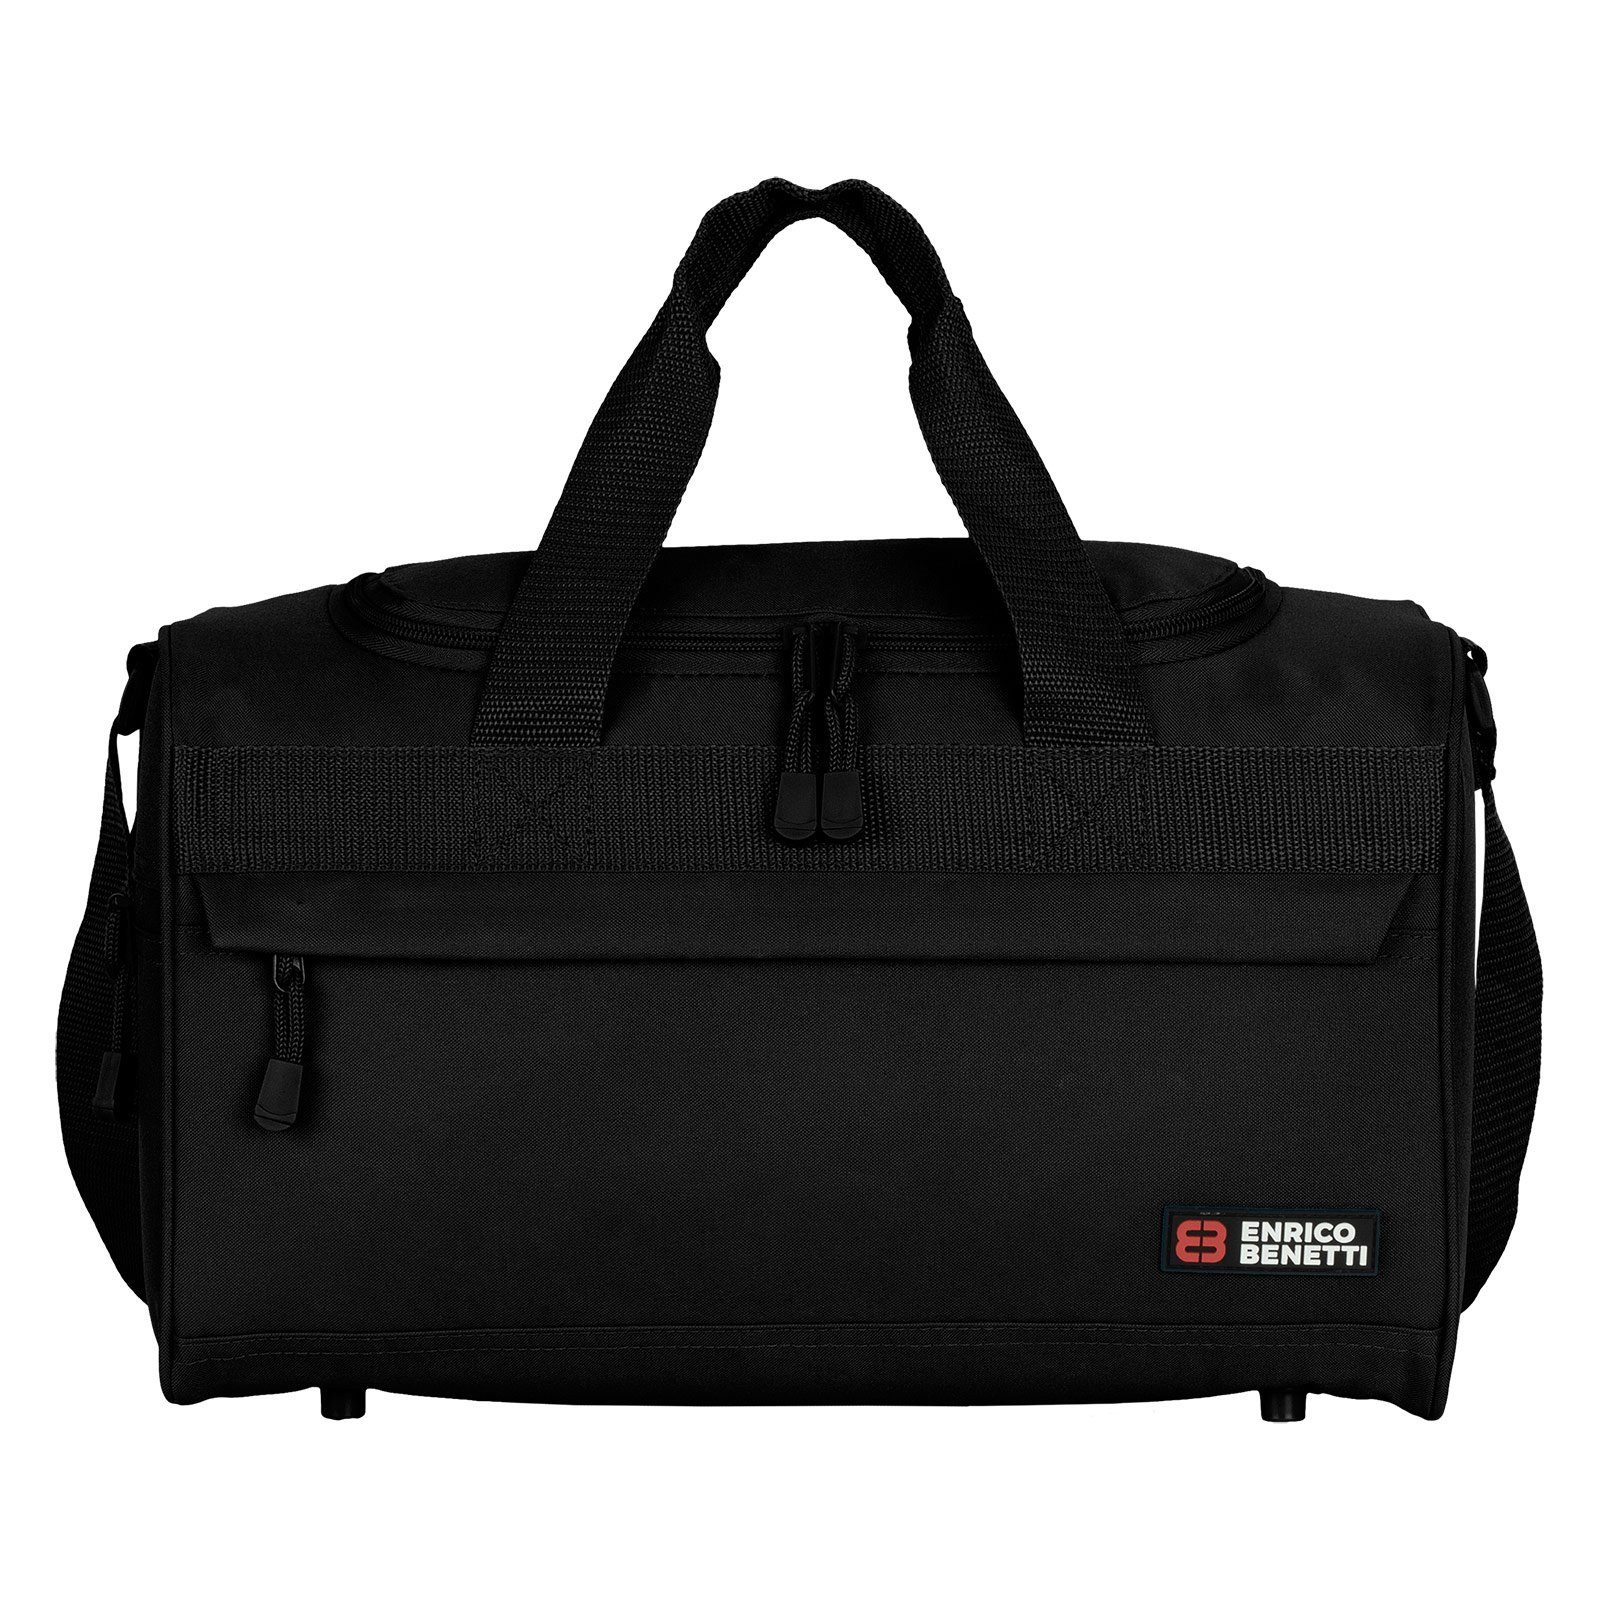 L Reisetasche Damen Reisetasche Saunatasche BLACK Sporttasche Fitnesstasche 40 Herren EAAKIE